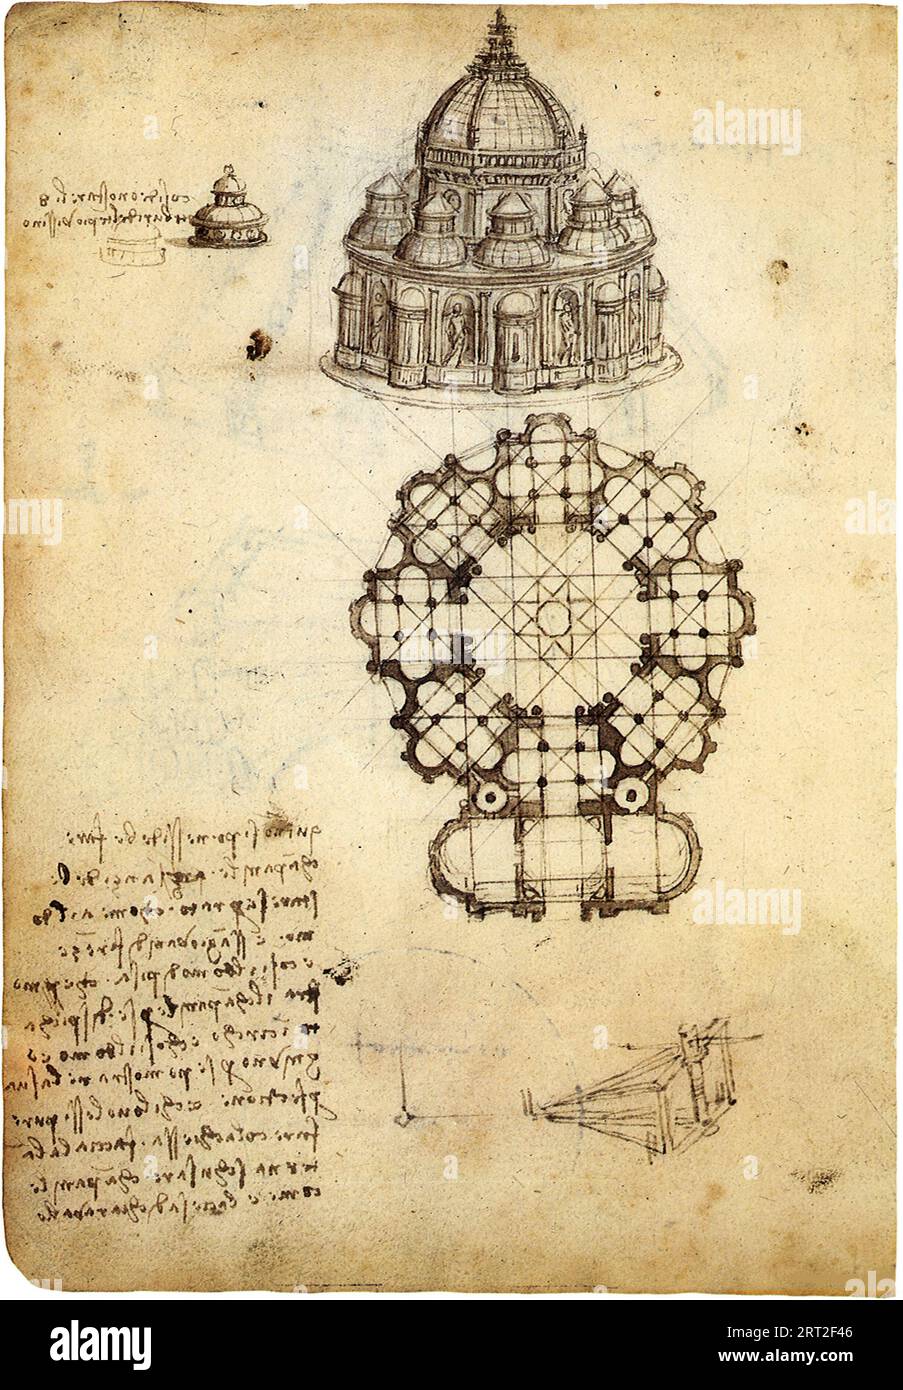 Codex Ashburnham: Studi per un edificio su un piano centralizzato, 1488-1490. Si trova nella collezione della Biblioth&#xe8;que de l'Institut de France, Parigi. Foto Stock